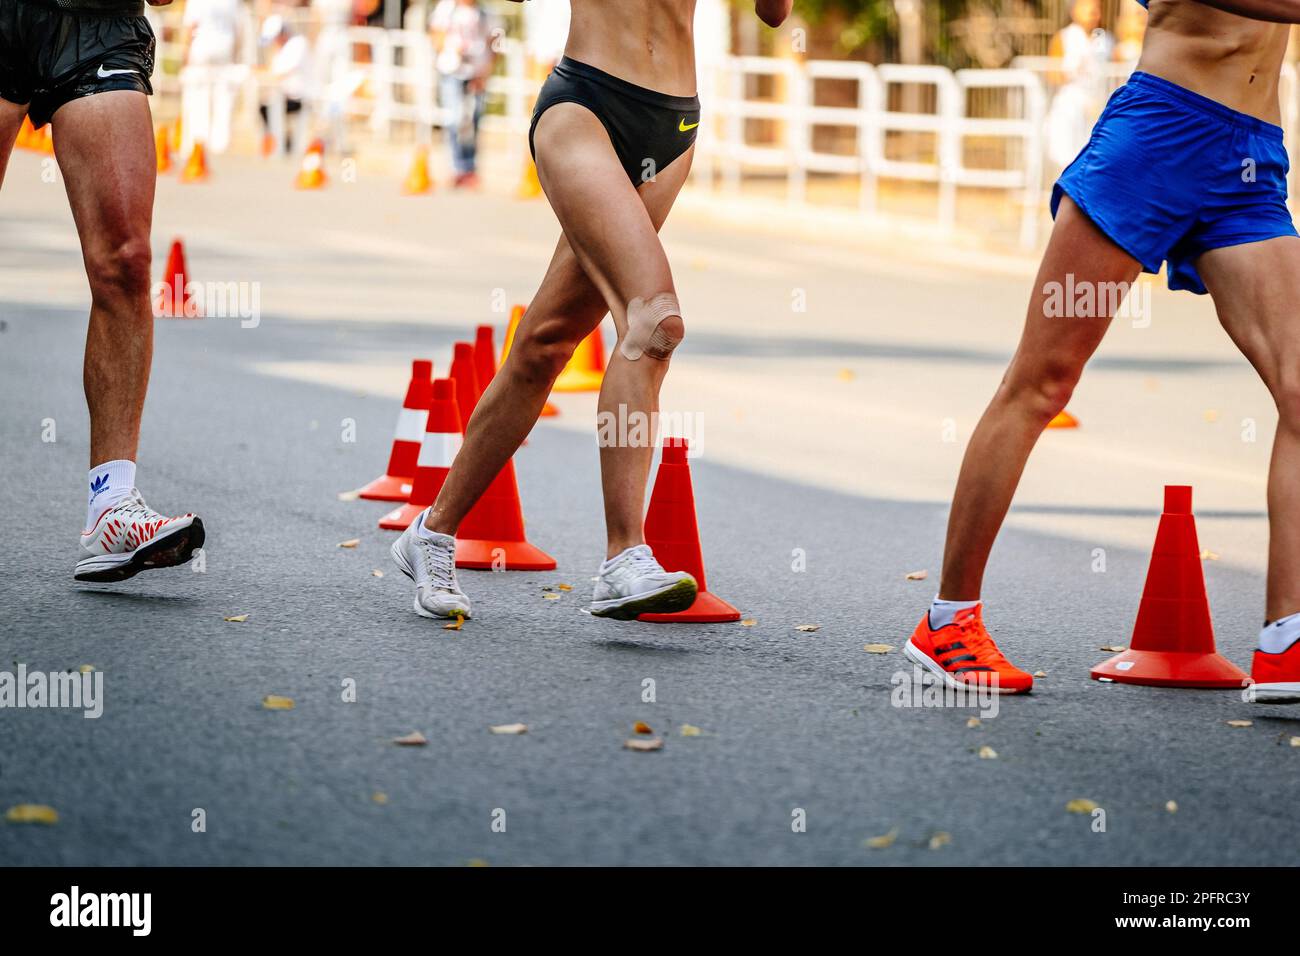 Les jambes regroupent les athlètes masculins et féminins en compétition, les chaussures de sport pour la marche Adidas et Asics et les shorts Nike Banque D'Images